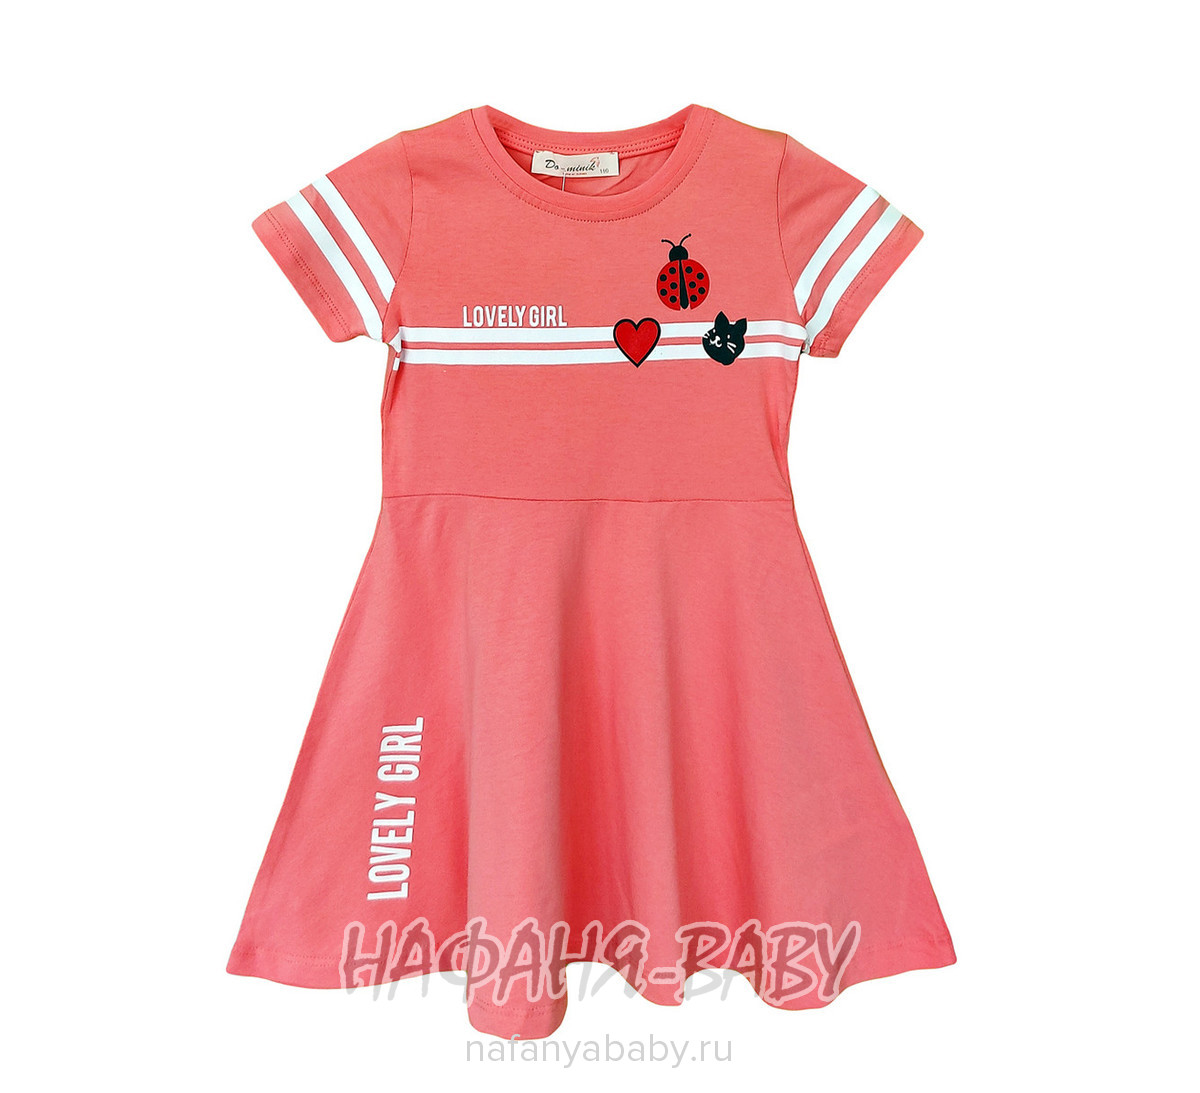 Детское платье DO-MINIK, купить в интернет магазине Нафаня. арт: 3415.